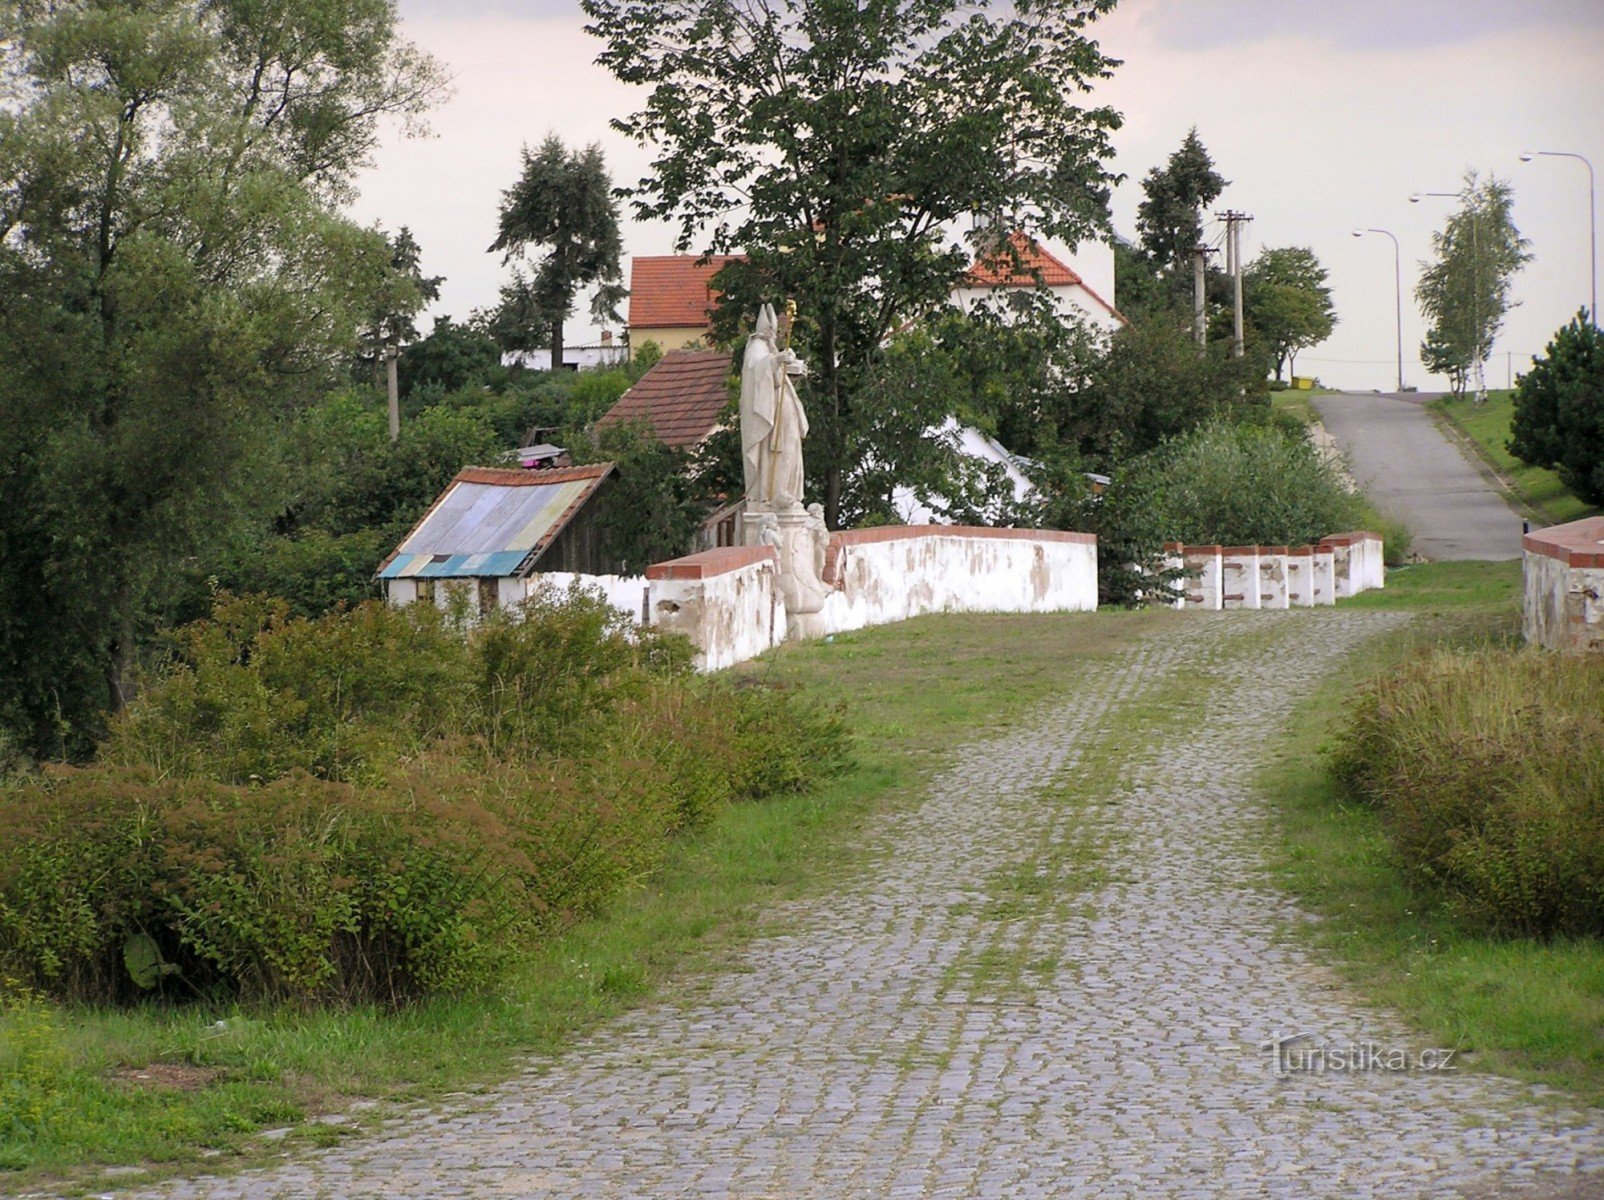 een goed bewaard gebleven deel van de oude keizerlijke verharde weg met een brug (een standbeeld van St. Nicolaas erop)